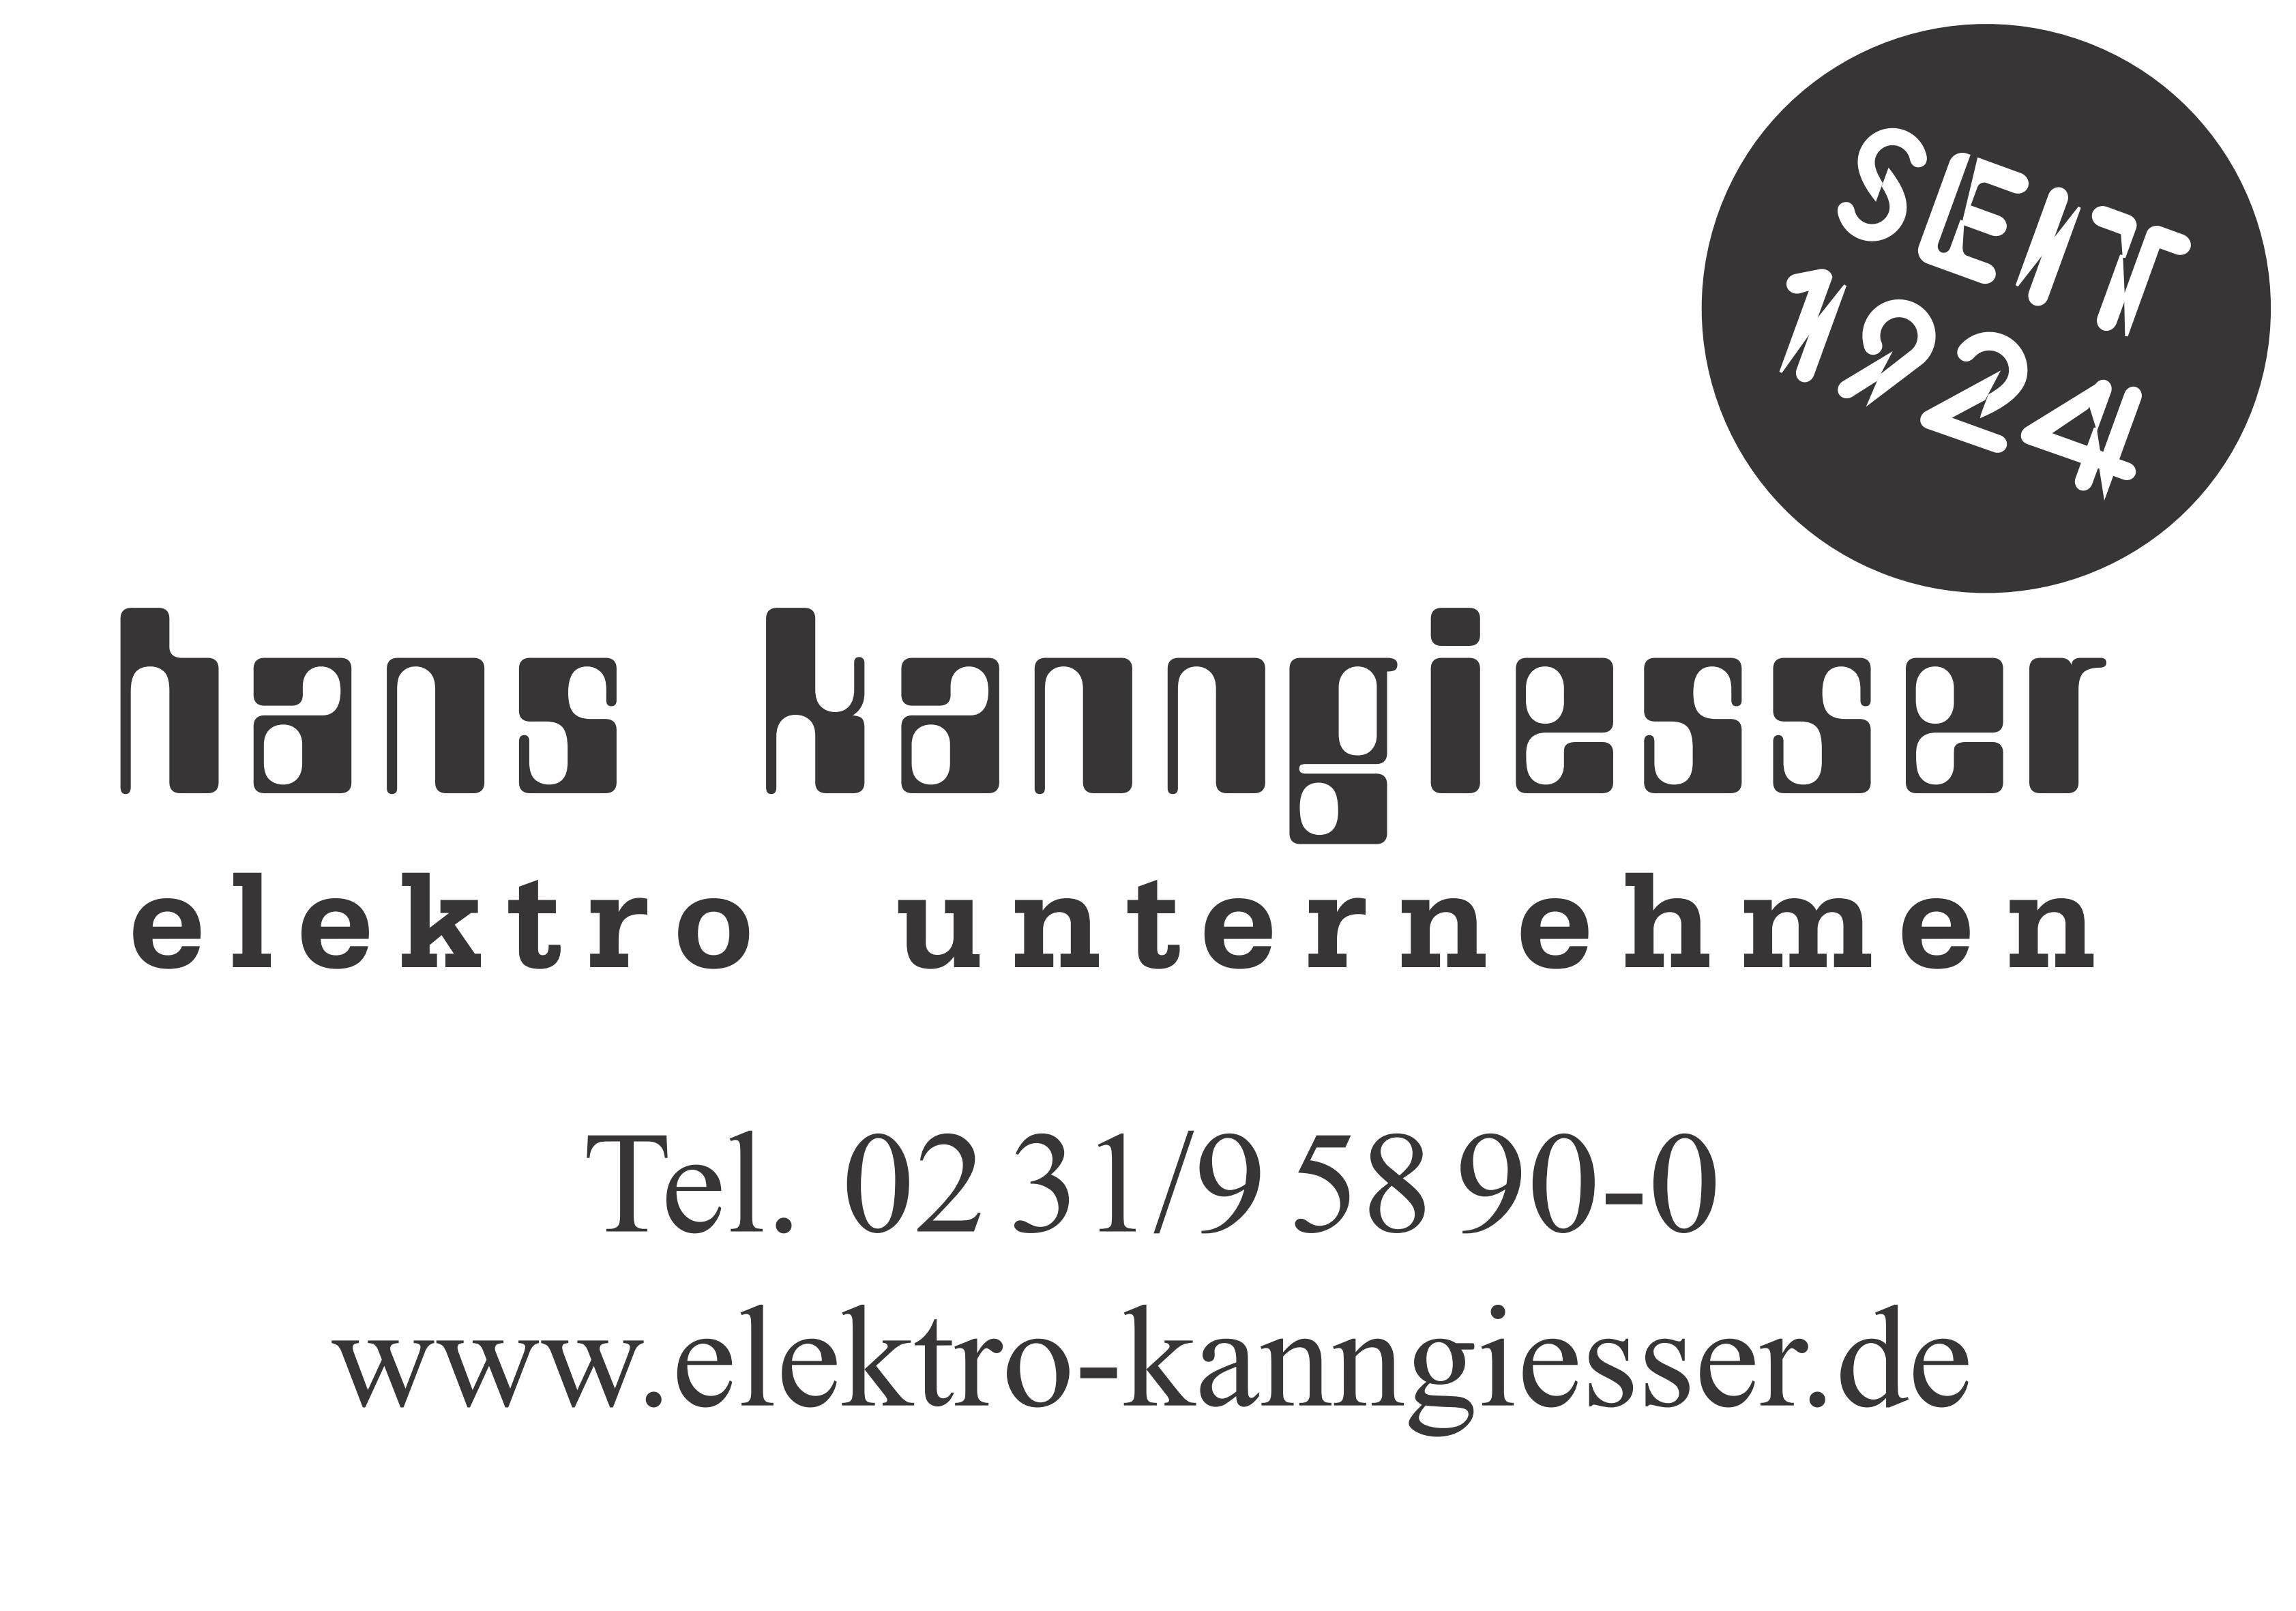 Bild 1 Kanngießer H. GmbH & Co.KG in Dortmund